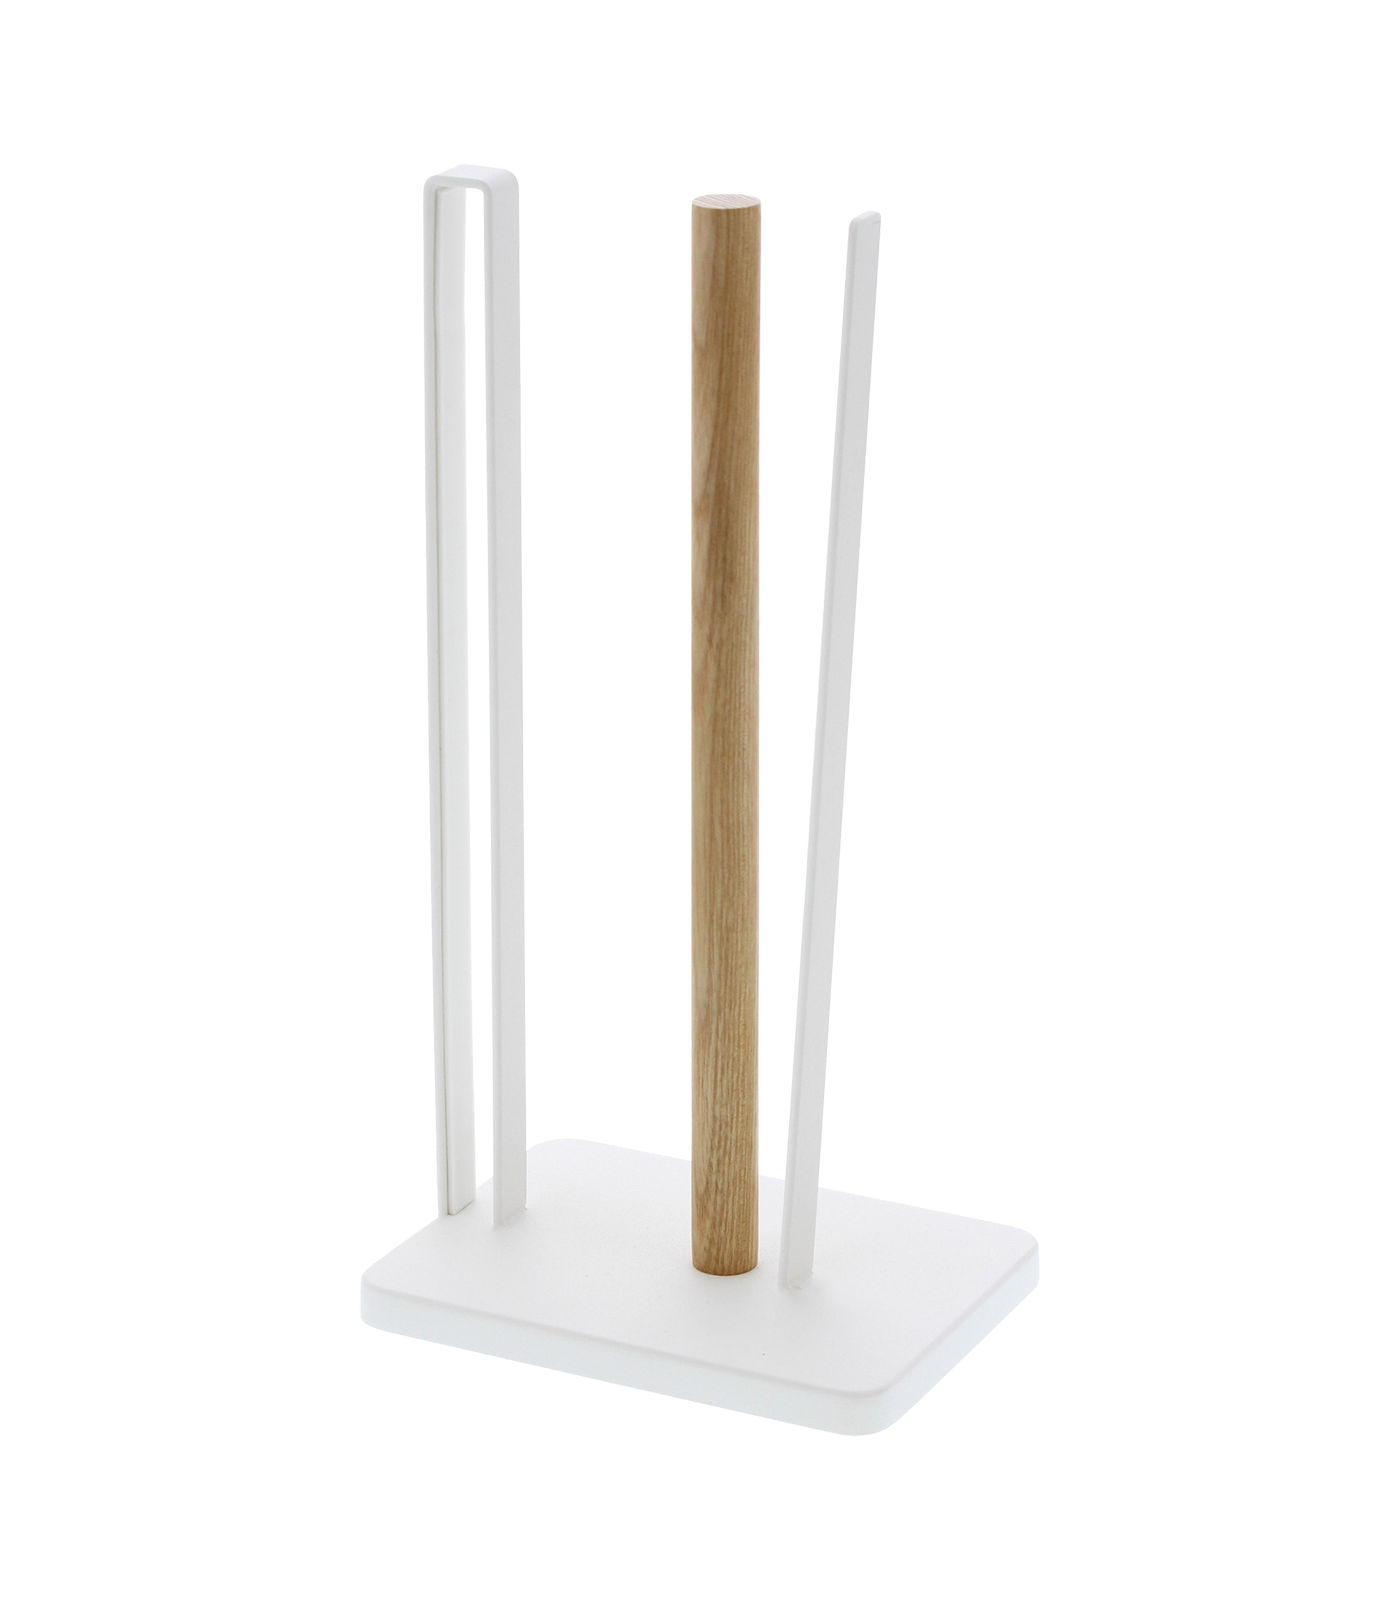 Paper Towel Holder - Steel + Wood